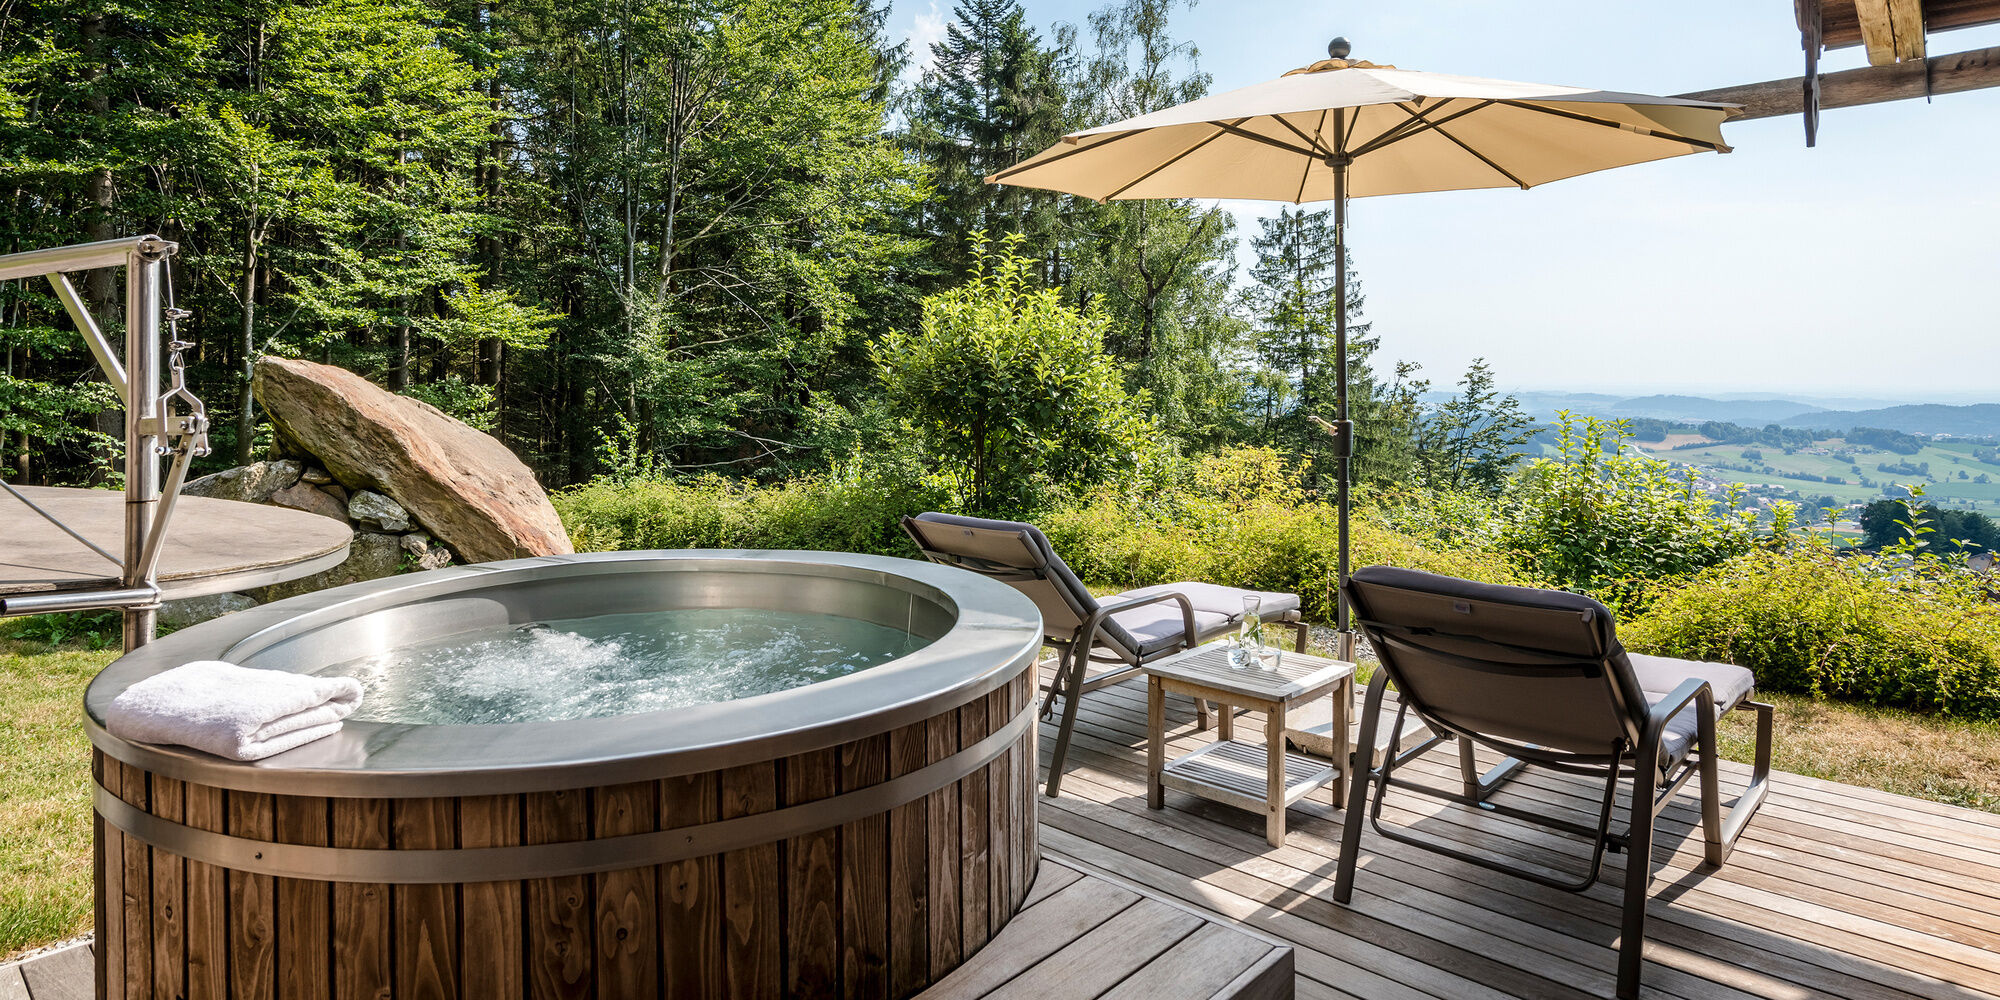 Whirlpool und Liegen auf der Terrasse des Luxus Chalets Bayern mit Panoramablick auf den Bayerischen Wald